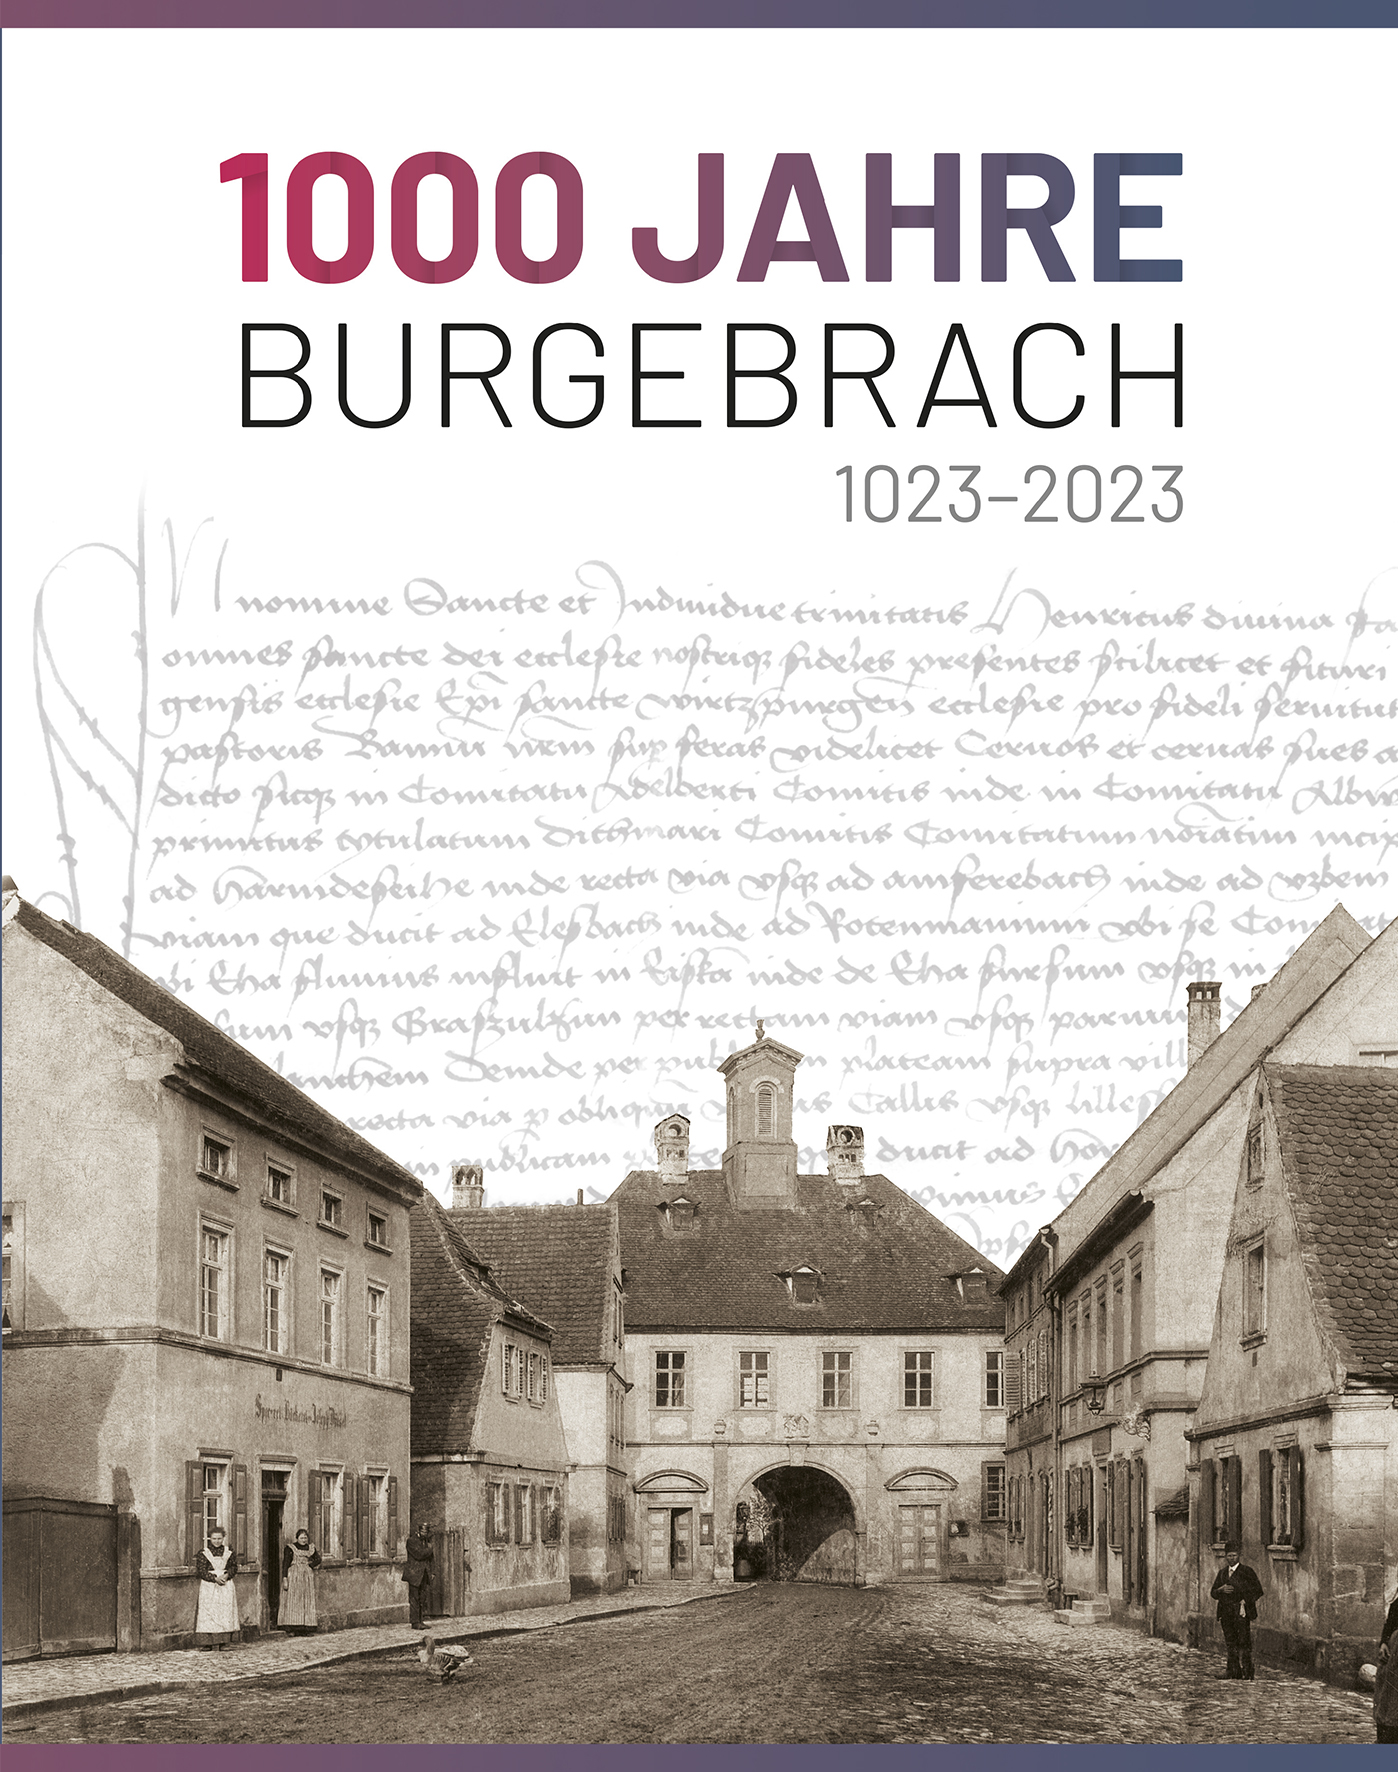 1000 Jahre Burgebrach_Umschlag_Aufriss.qxp_Layout 1